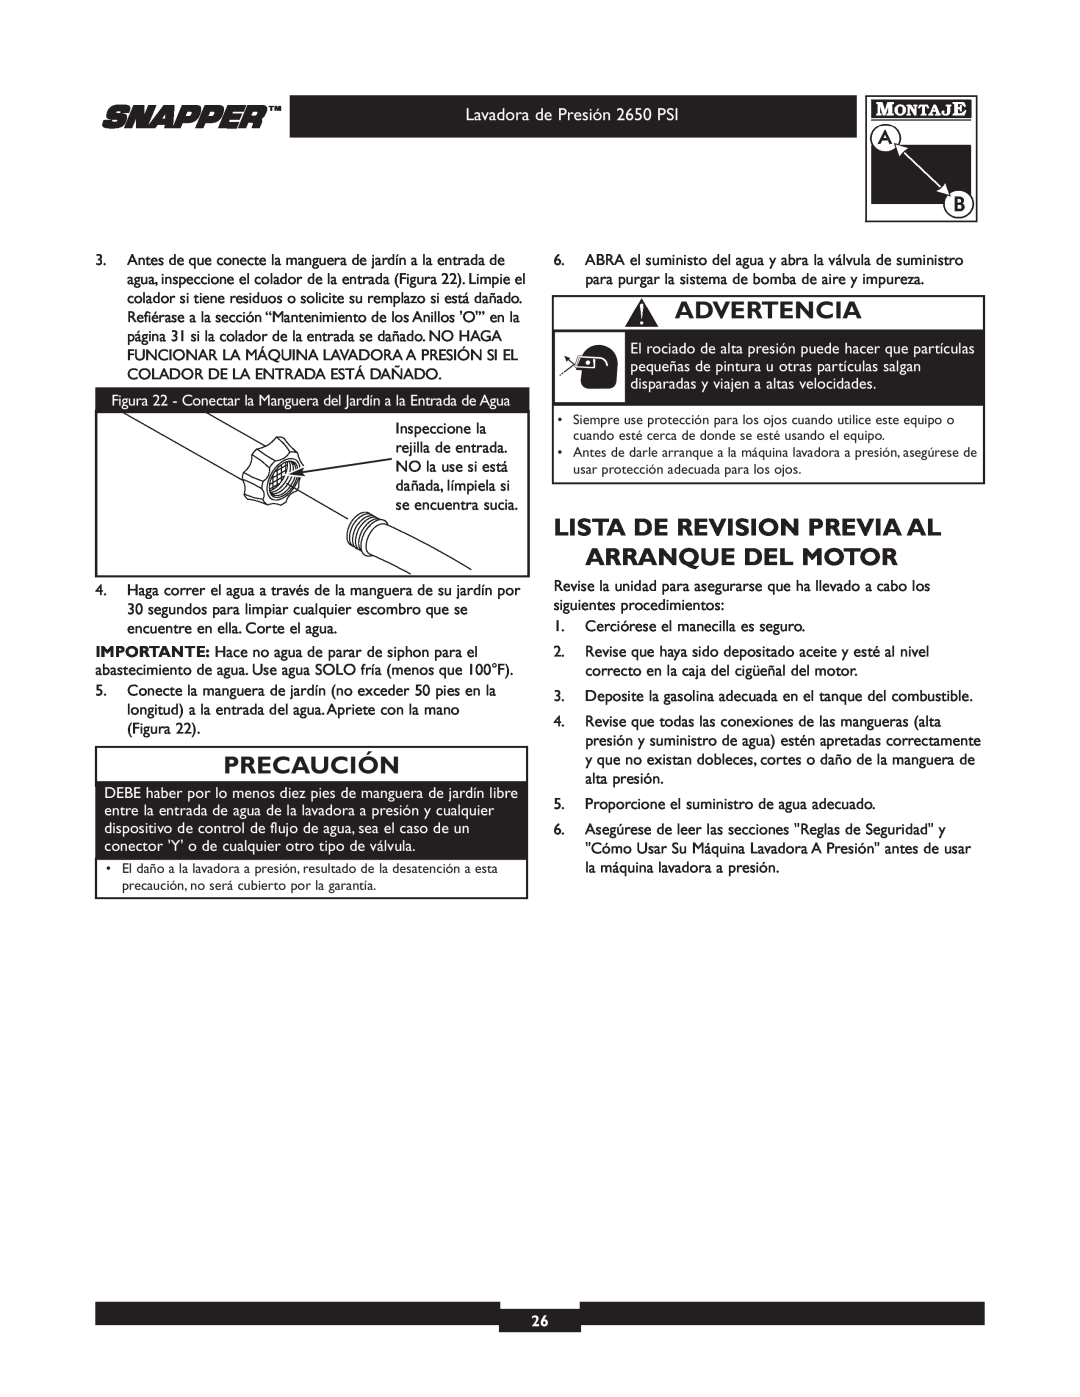 Snapper 020230 user manual Lista De Revision Previa Al Arranque Del Motor, Precaución, Advertencia 